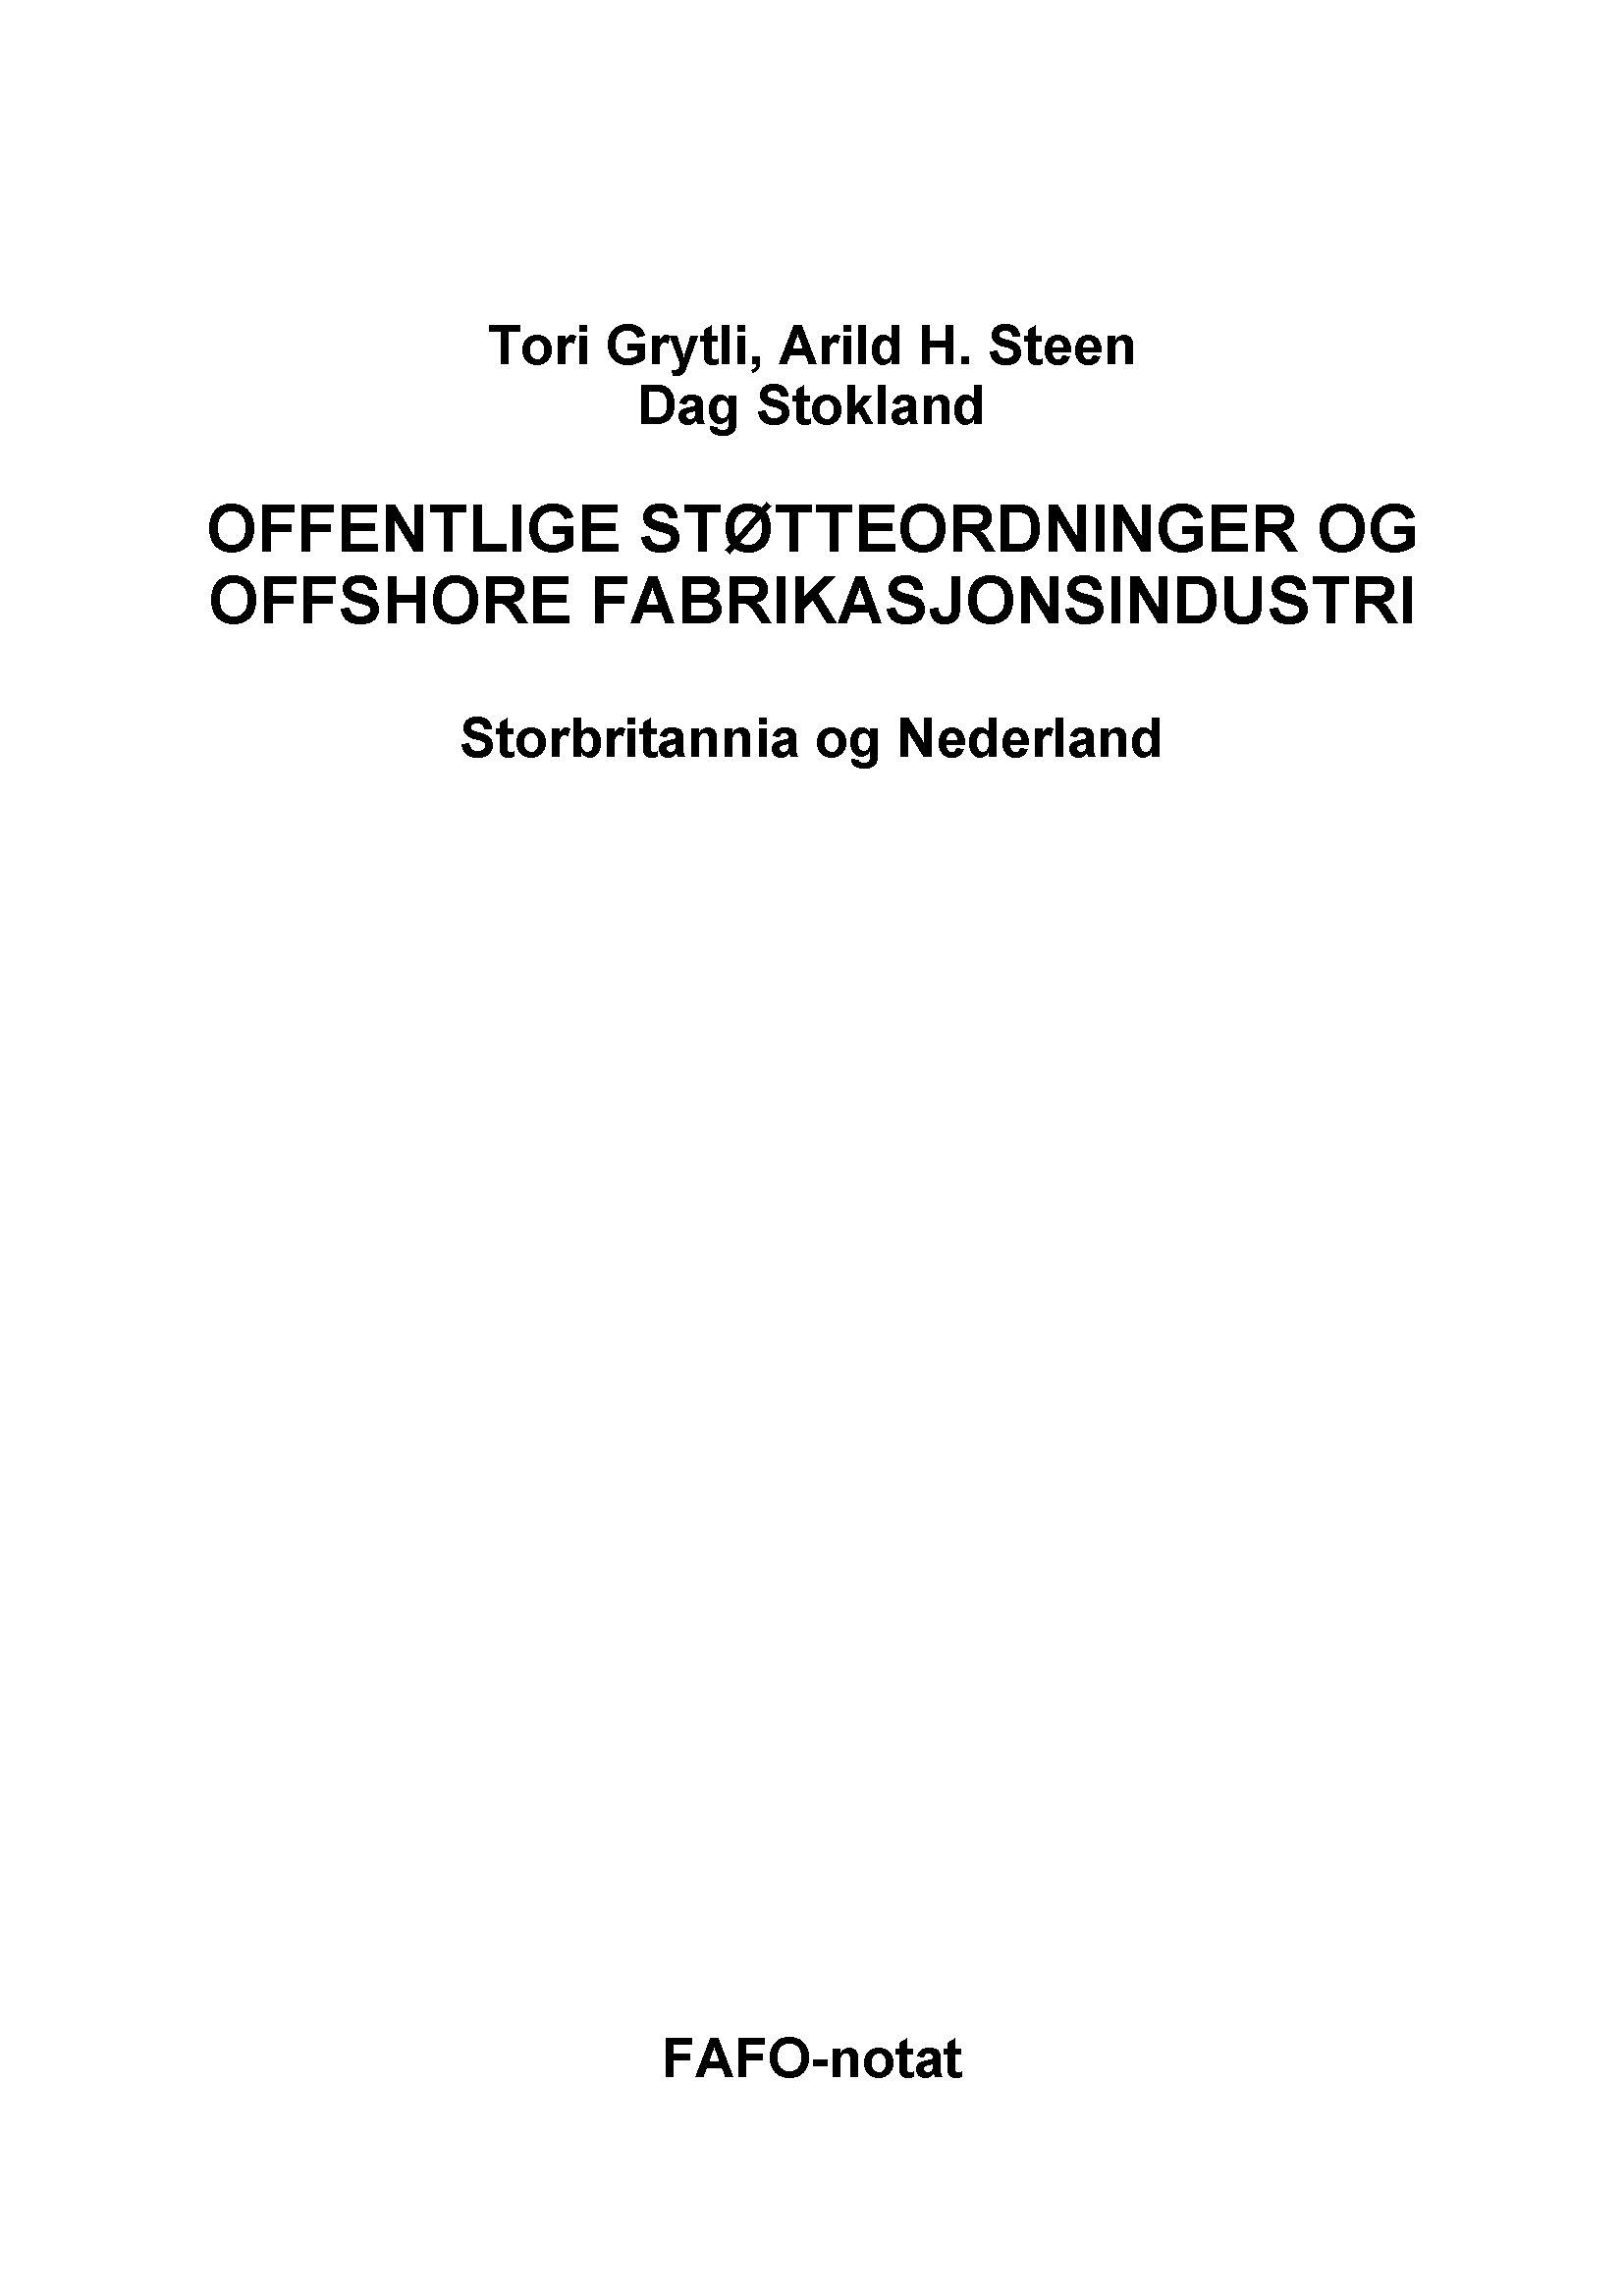 Offentlige støtteordninger og offshore fabrikasjonsindustri Storbritannia og Nederland